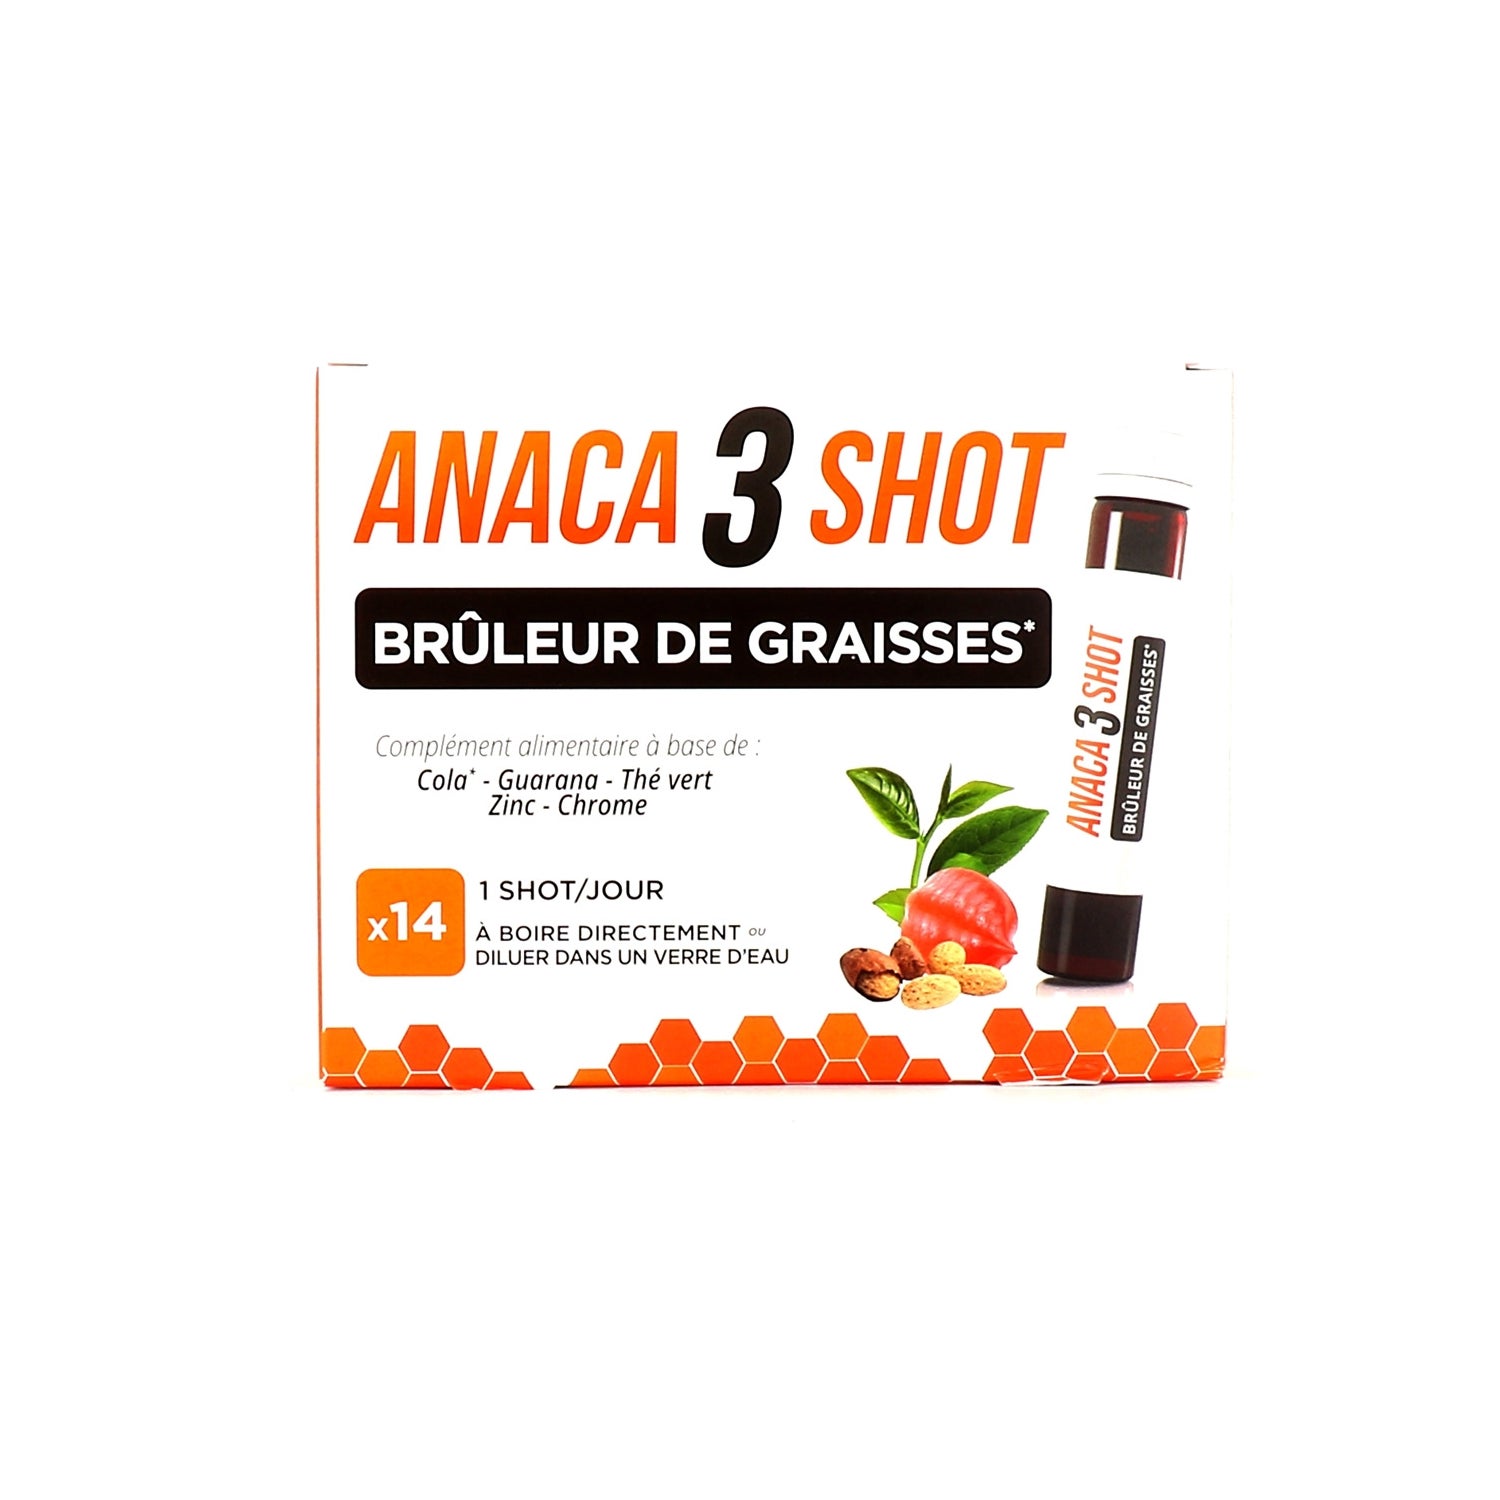 Anaca3 Shot Perte De Poids 14 Shots